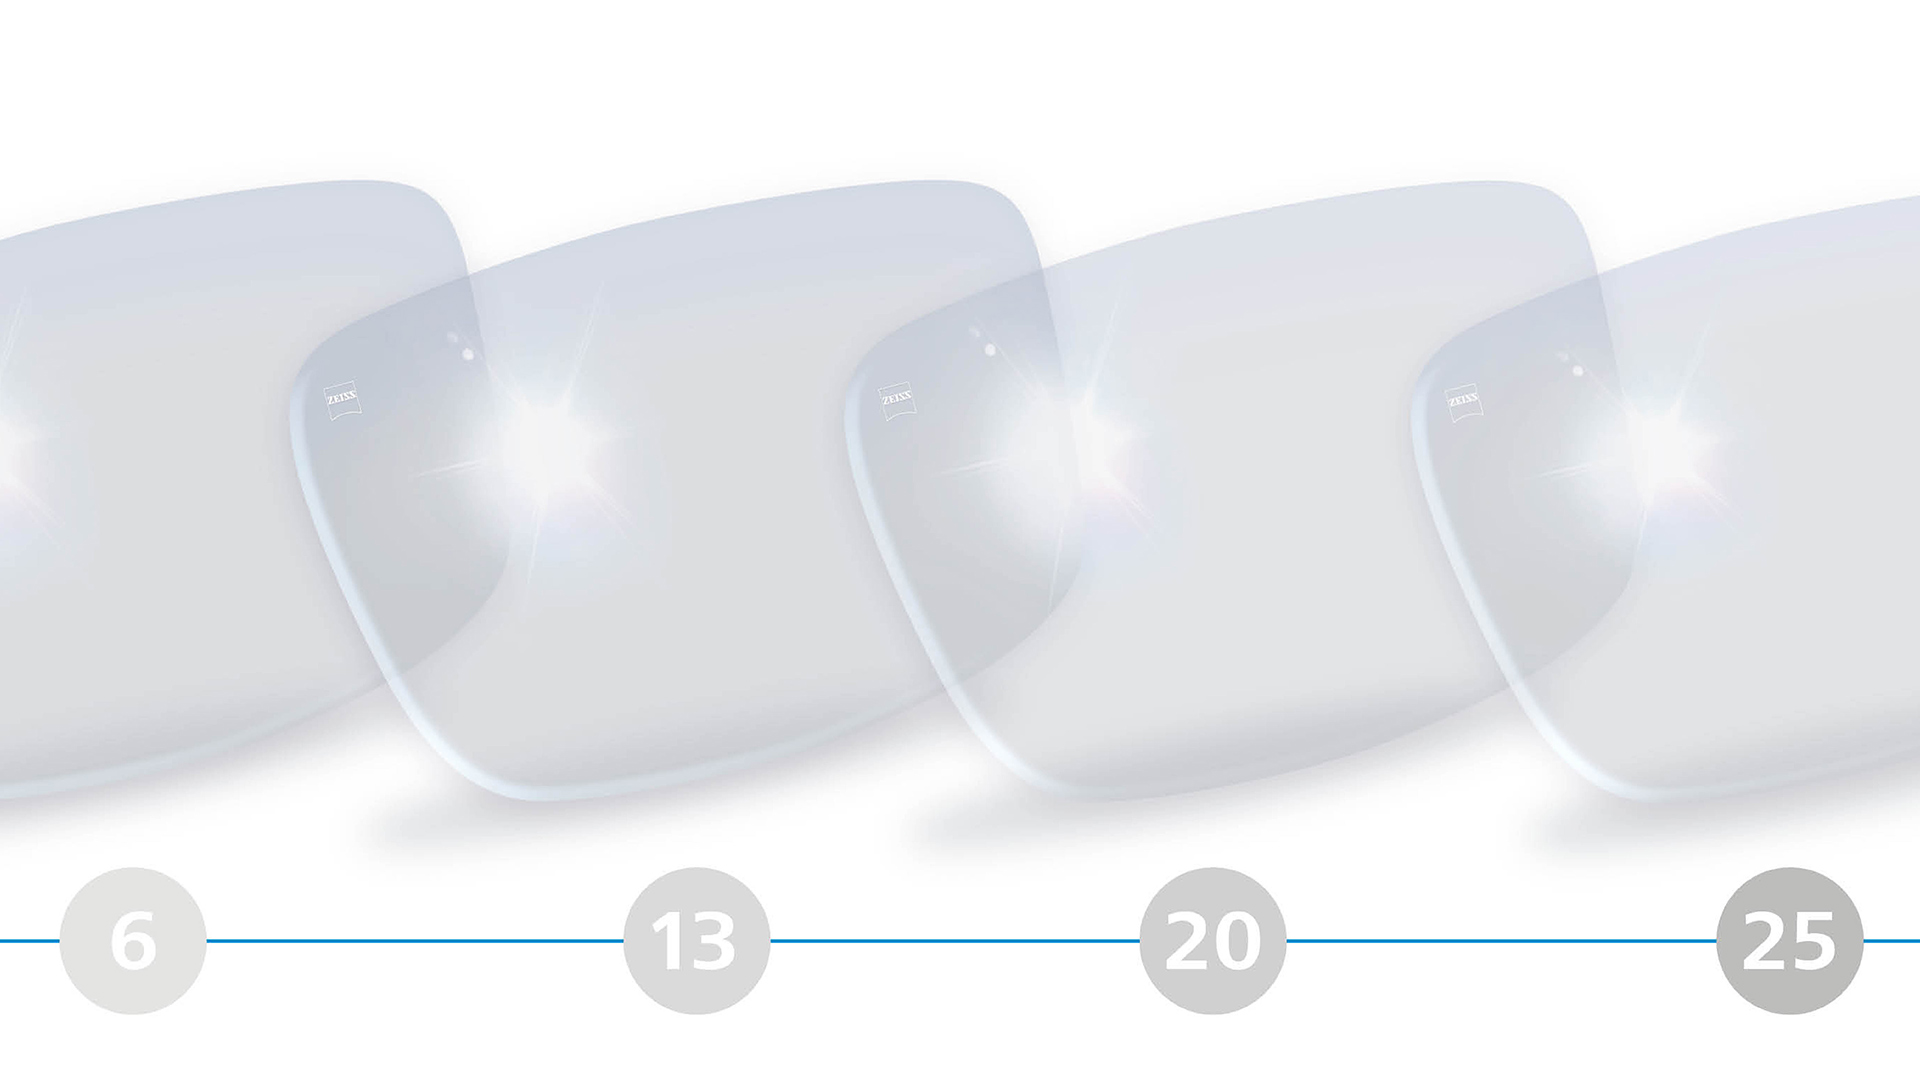 Ilustração em 3D de lentes de visão simples para a faixa etária dos 6 aos 25 anos.